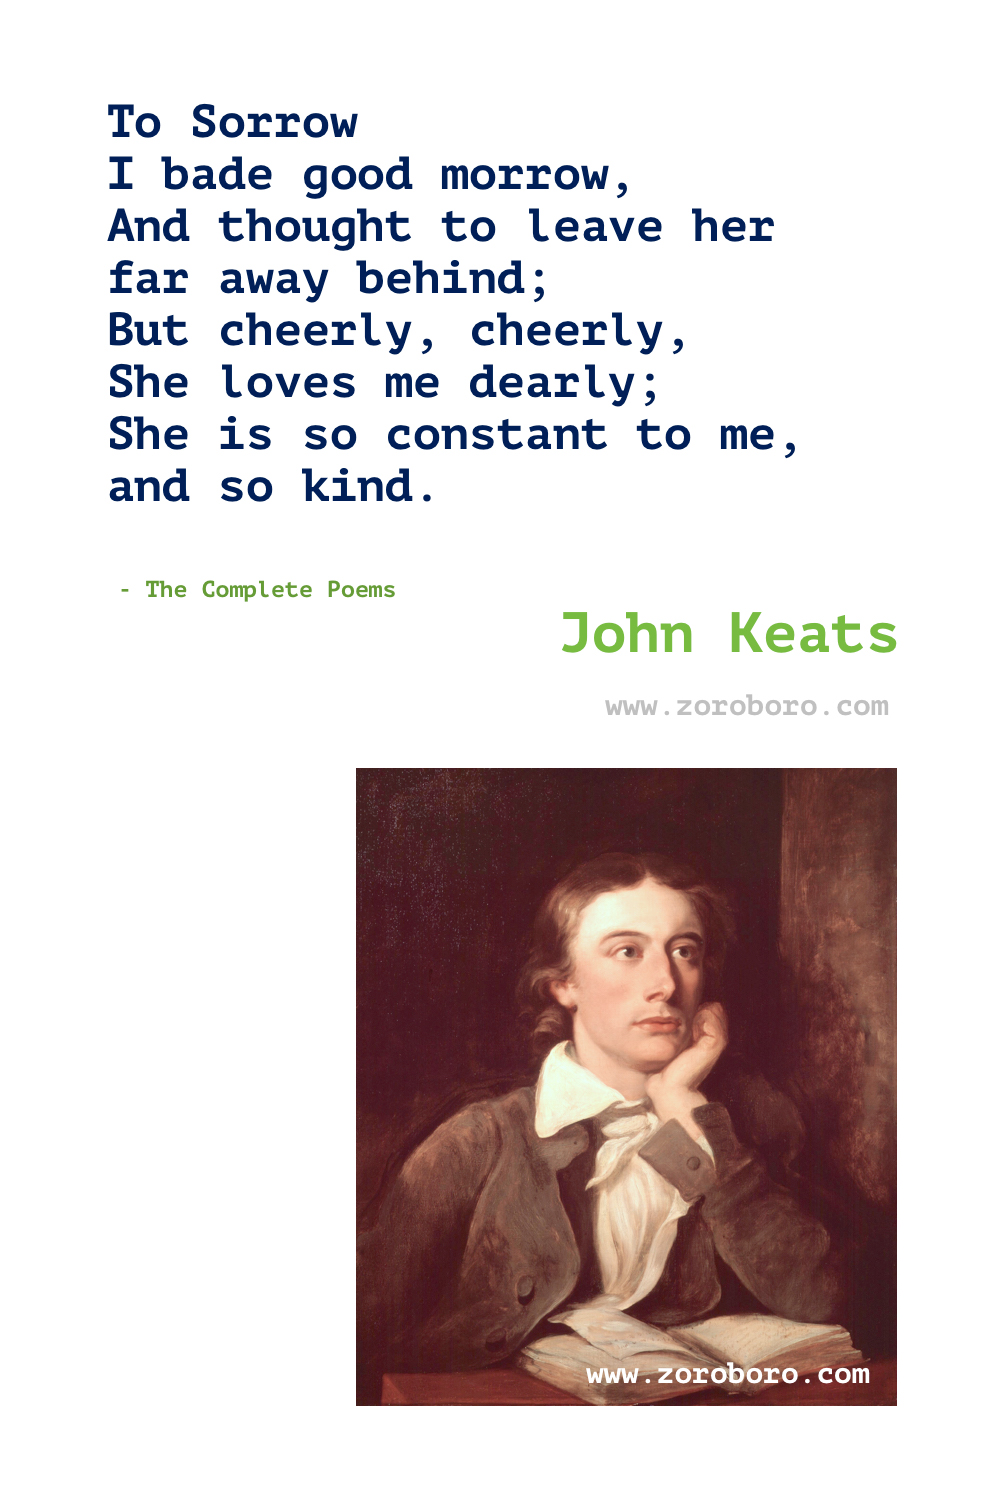 John Keats Quotes. John Keats Poems. John Keats Poetry. John Keats Writing Books Quotes. Poems of John Keats on Love, Beauty & Death